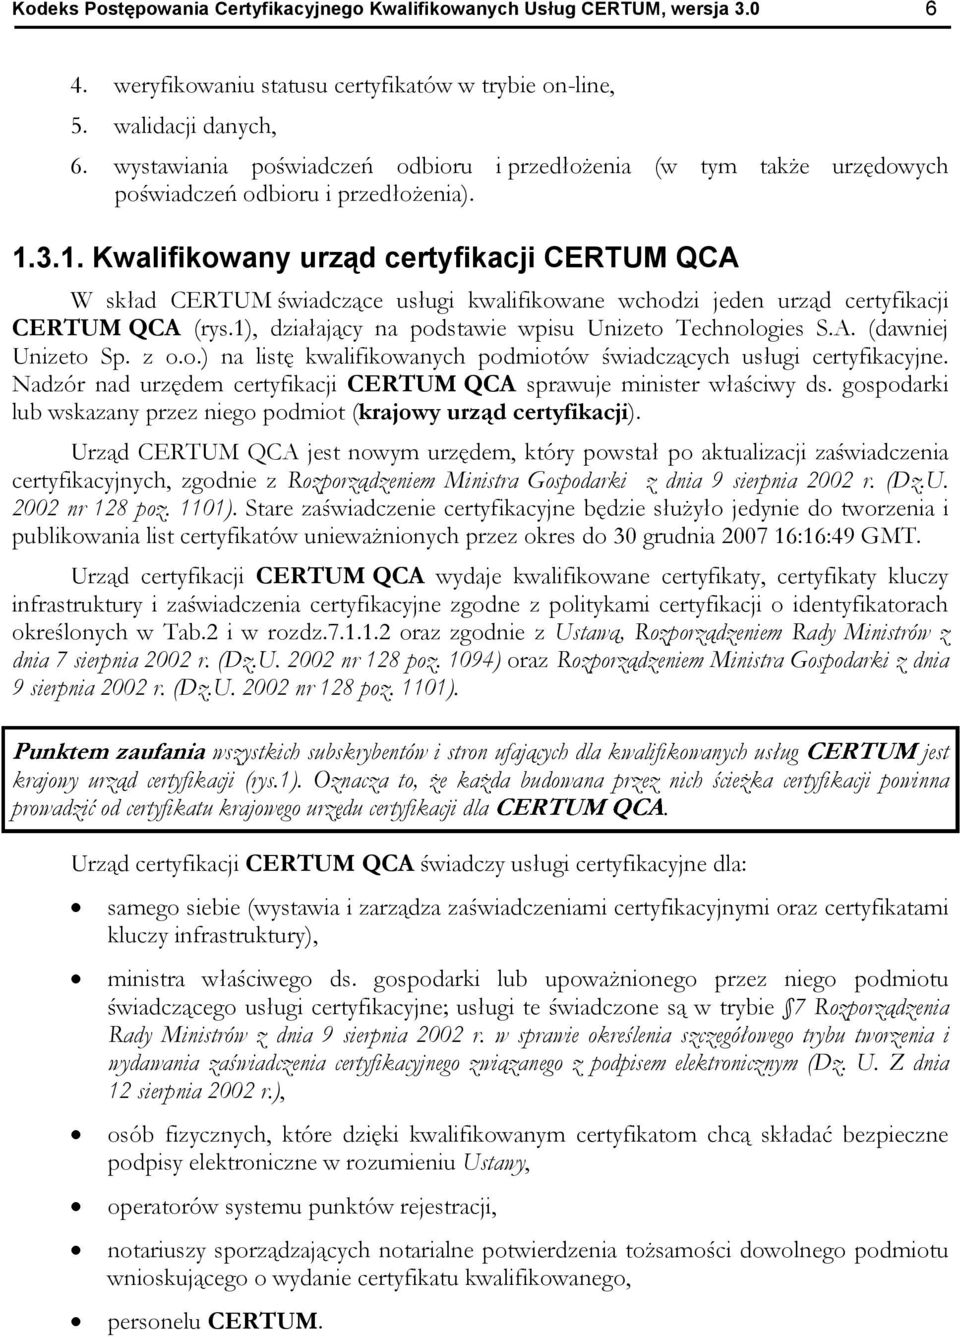 3.1. Kwalifikowany urz d certyfikacji CERTUM QCA W sk ad CERTUM wiadcz ce us ugi kwalifikowane wchodzi jeden urz d certyfikacji CERTUM QCA (rys.